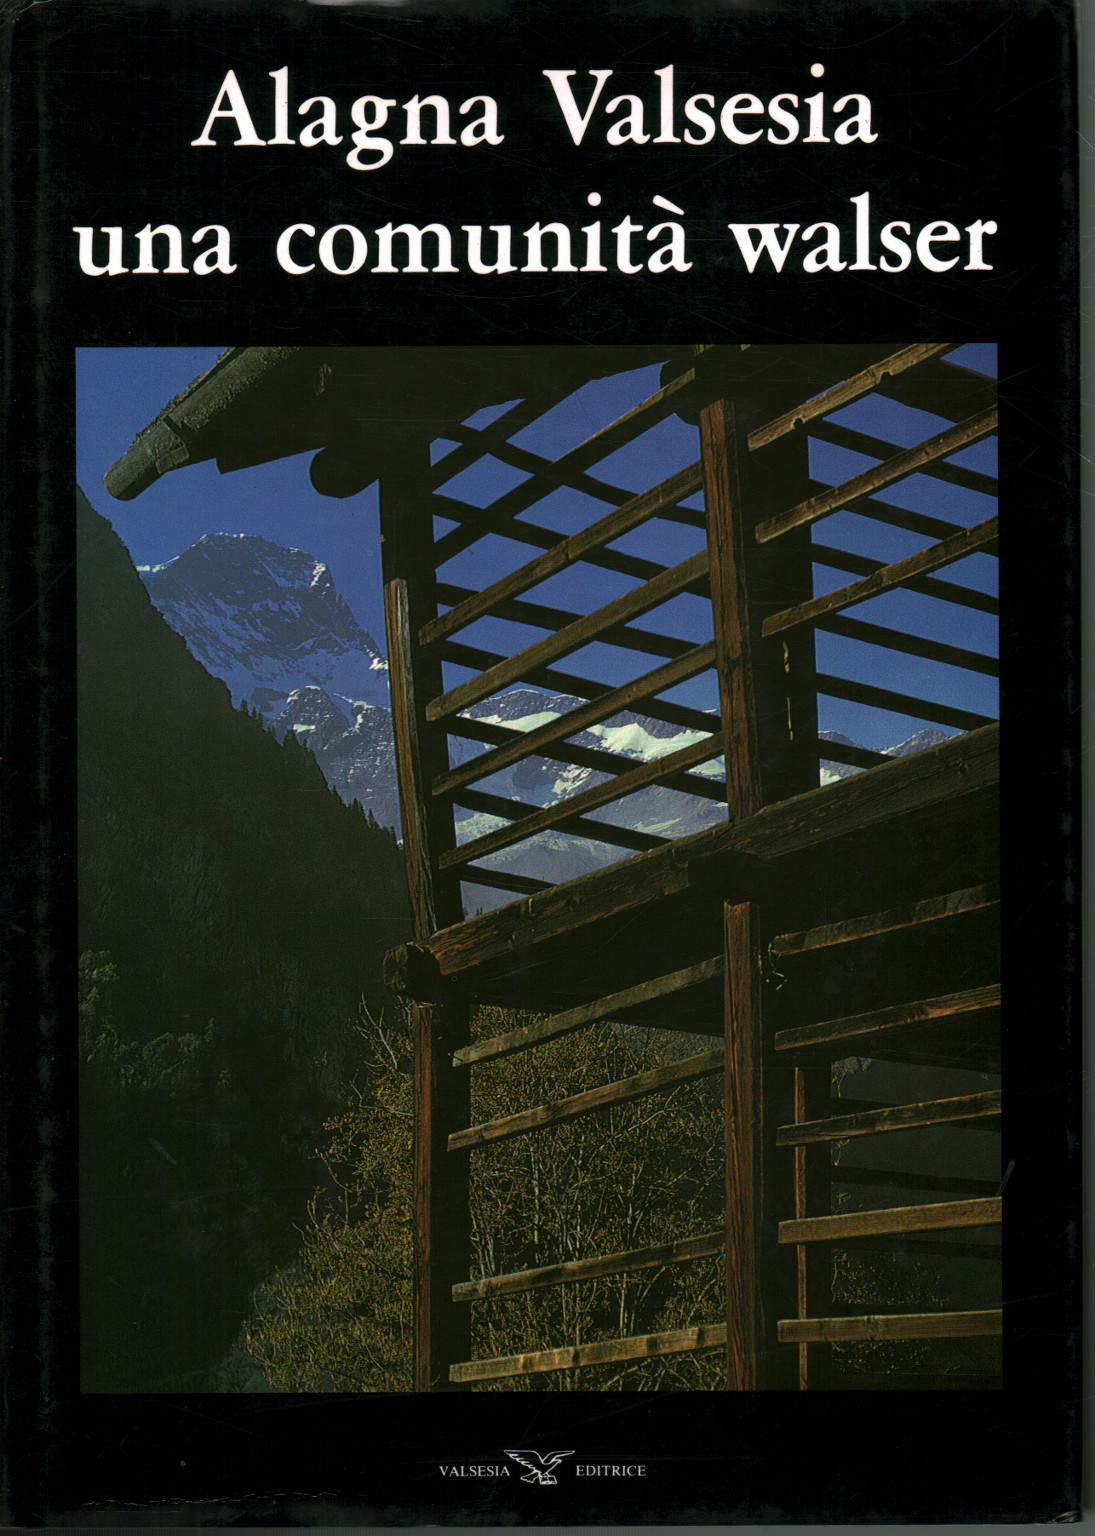 Alagna Valsesia ist eine Walsergemeinde